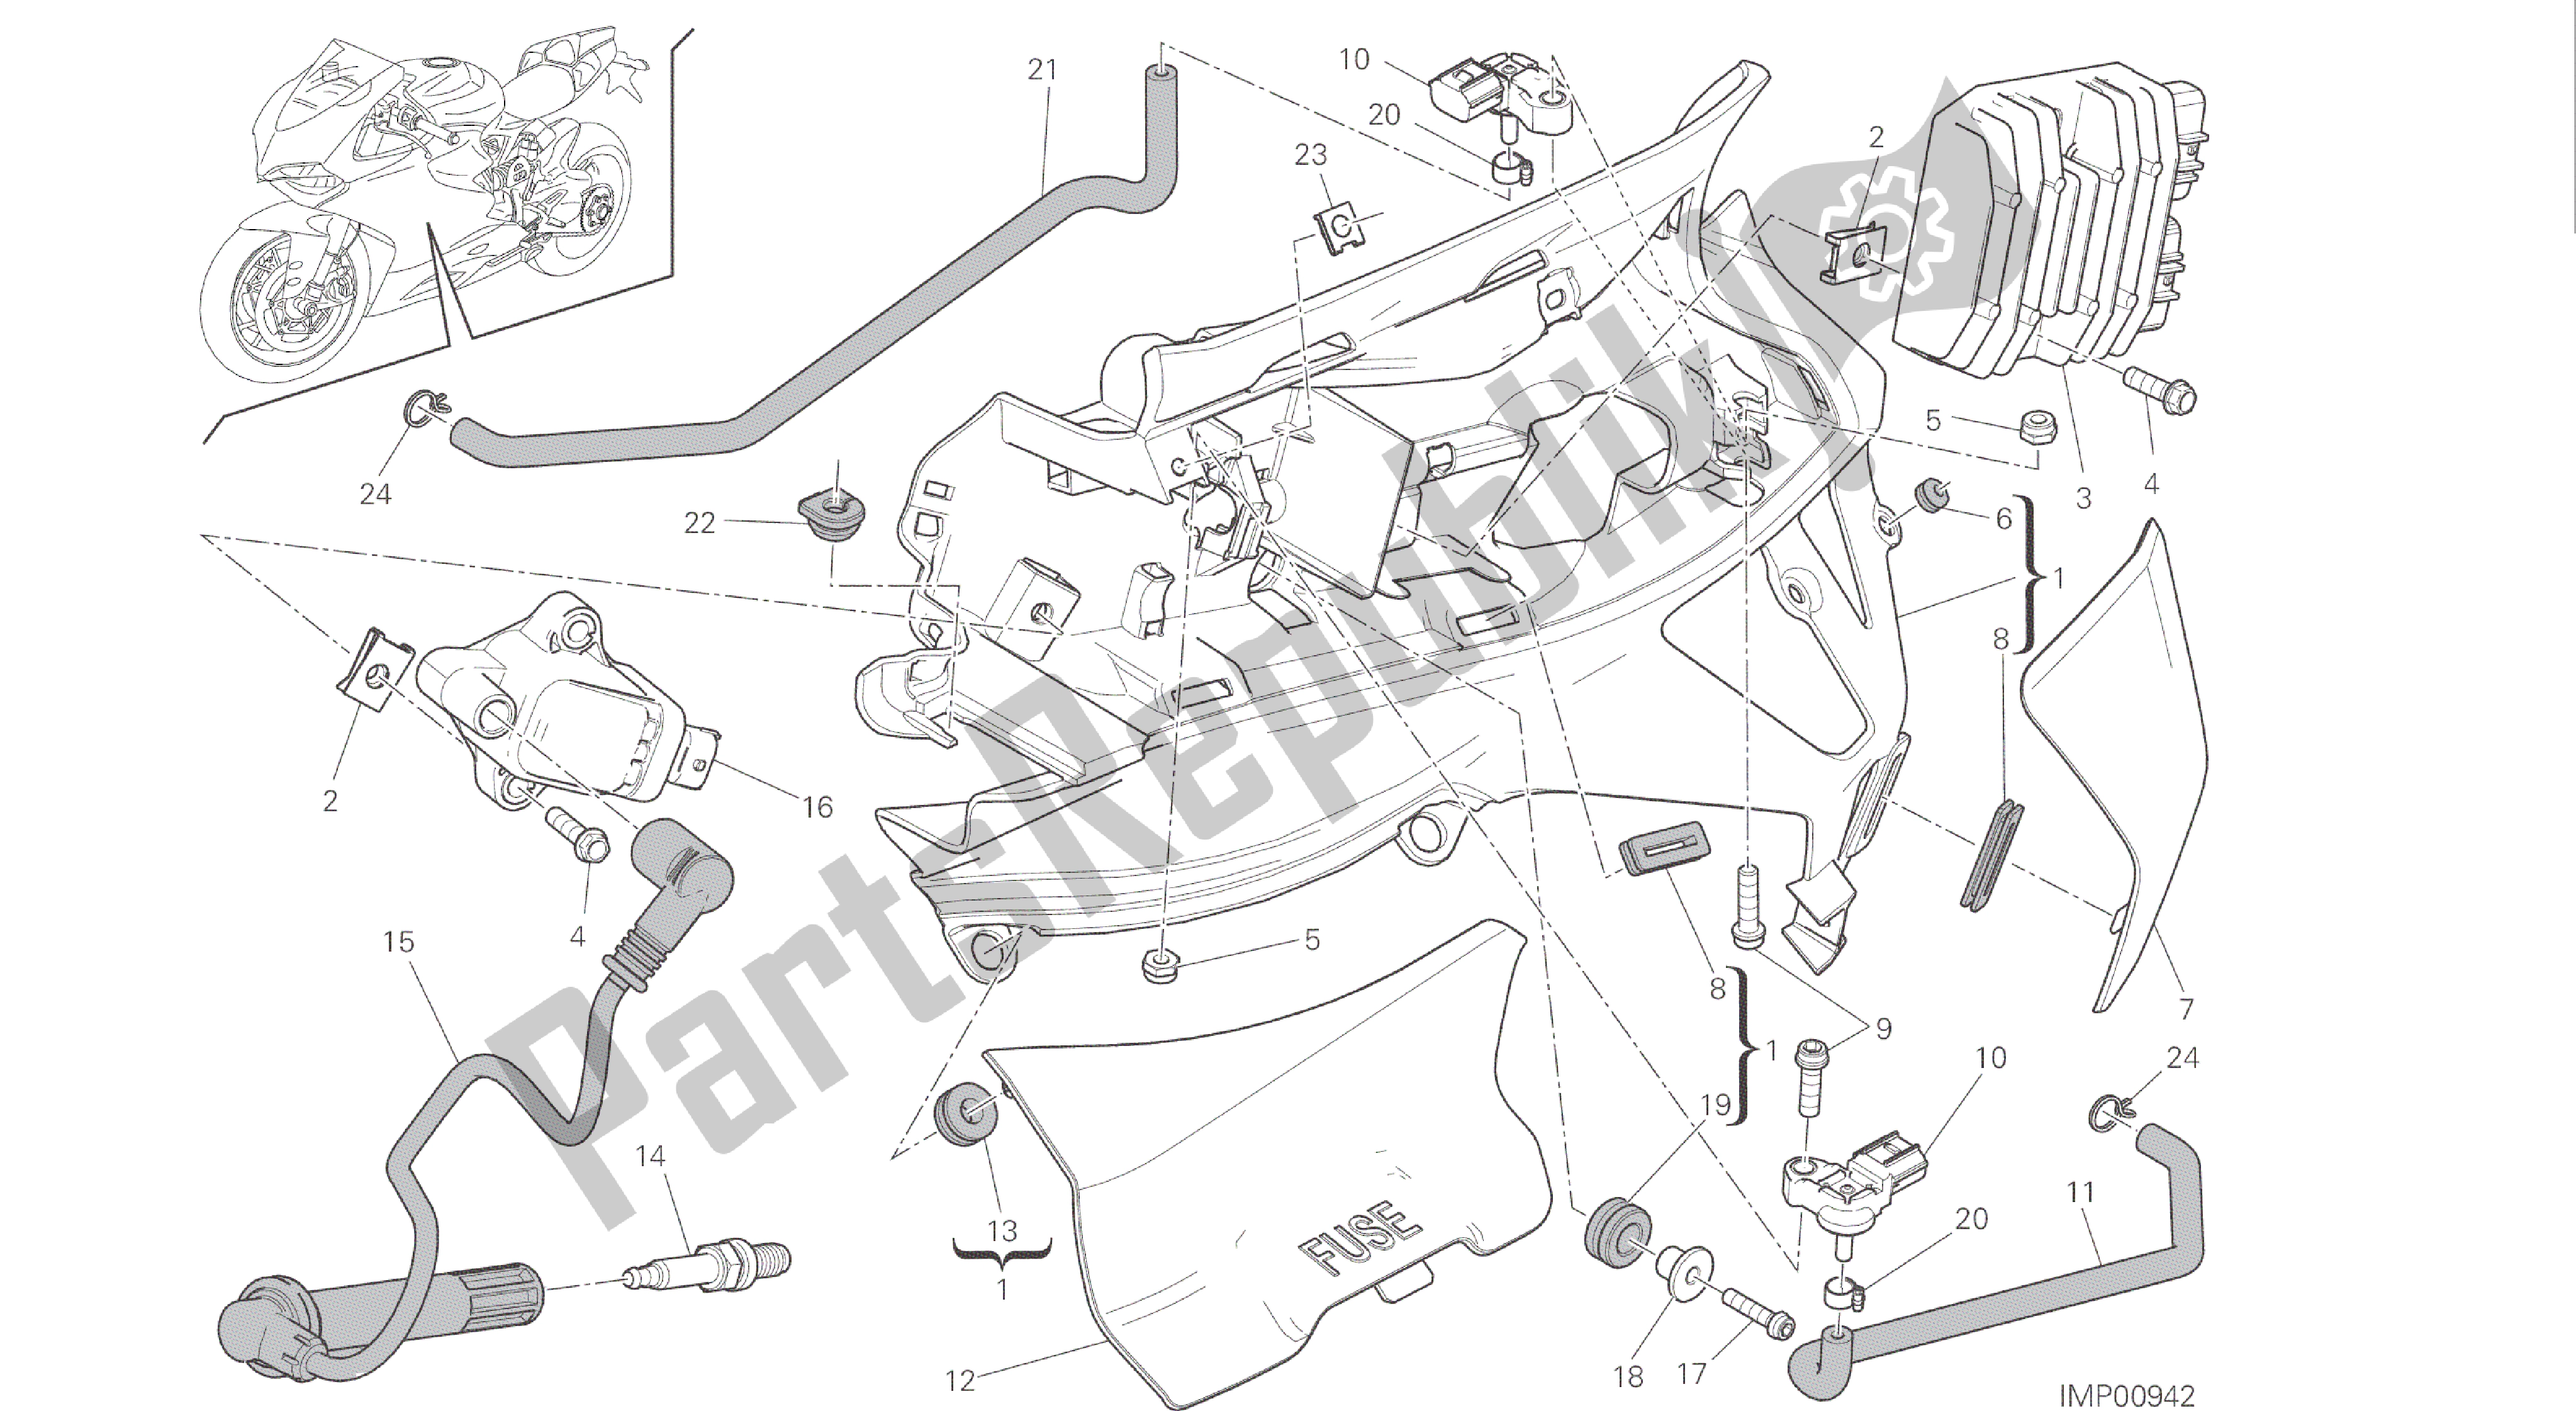 Todas las partes para Dibujo 018 - Impianto Elettrico Sinistro [mod: 1299s; Xst: Aus, Eur, Fra, Jap, Twn] Grupo Eléctrico de Ducati Panigale S ABS 1299 2016